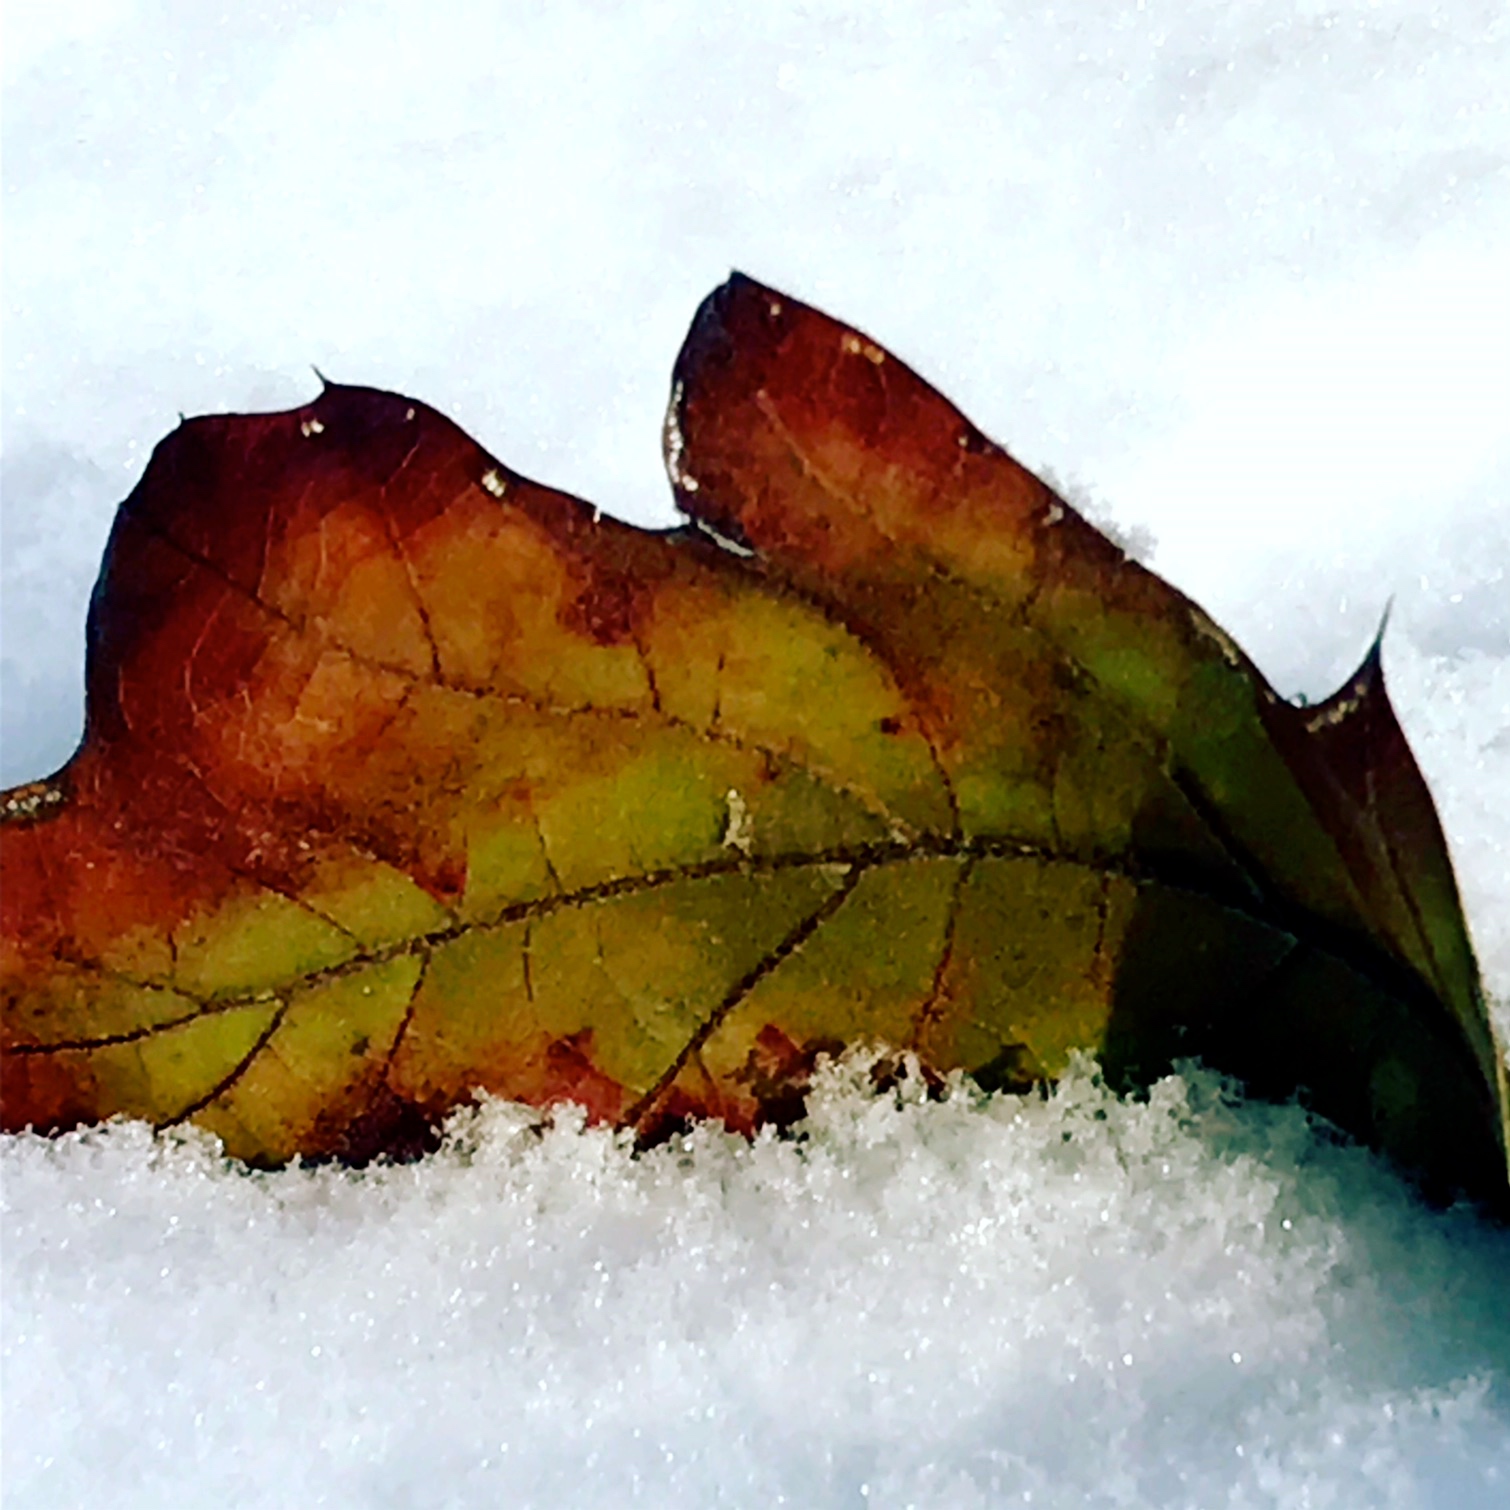 leaf in snow.JPG